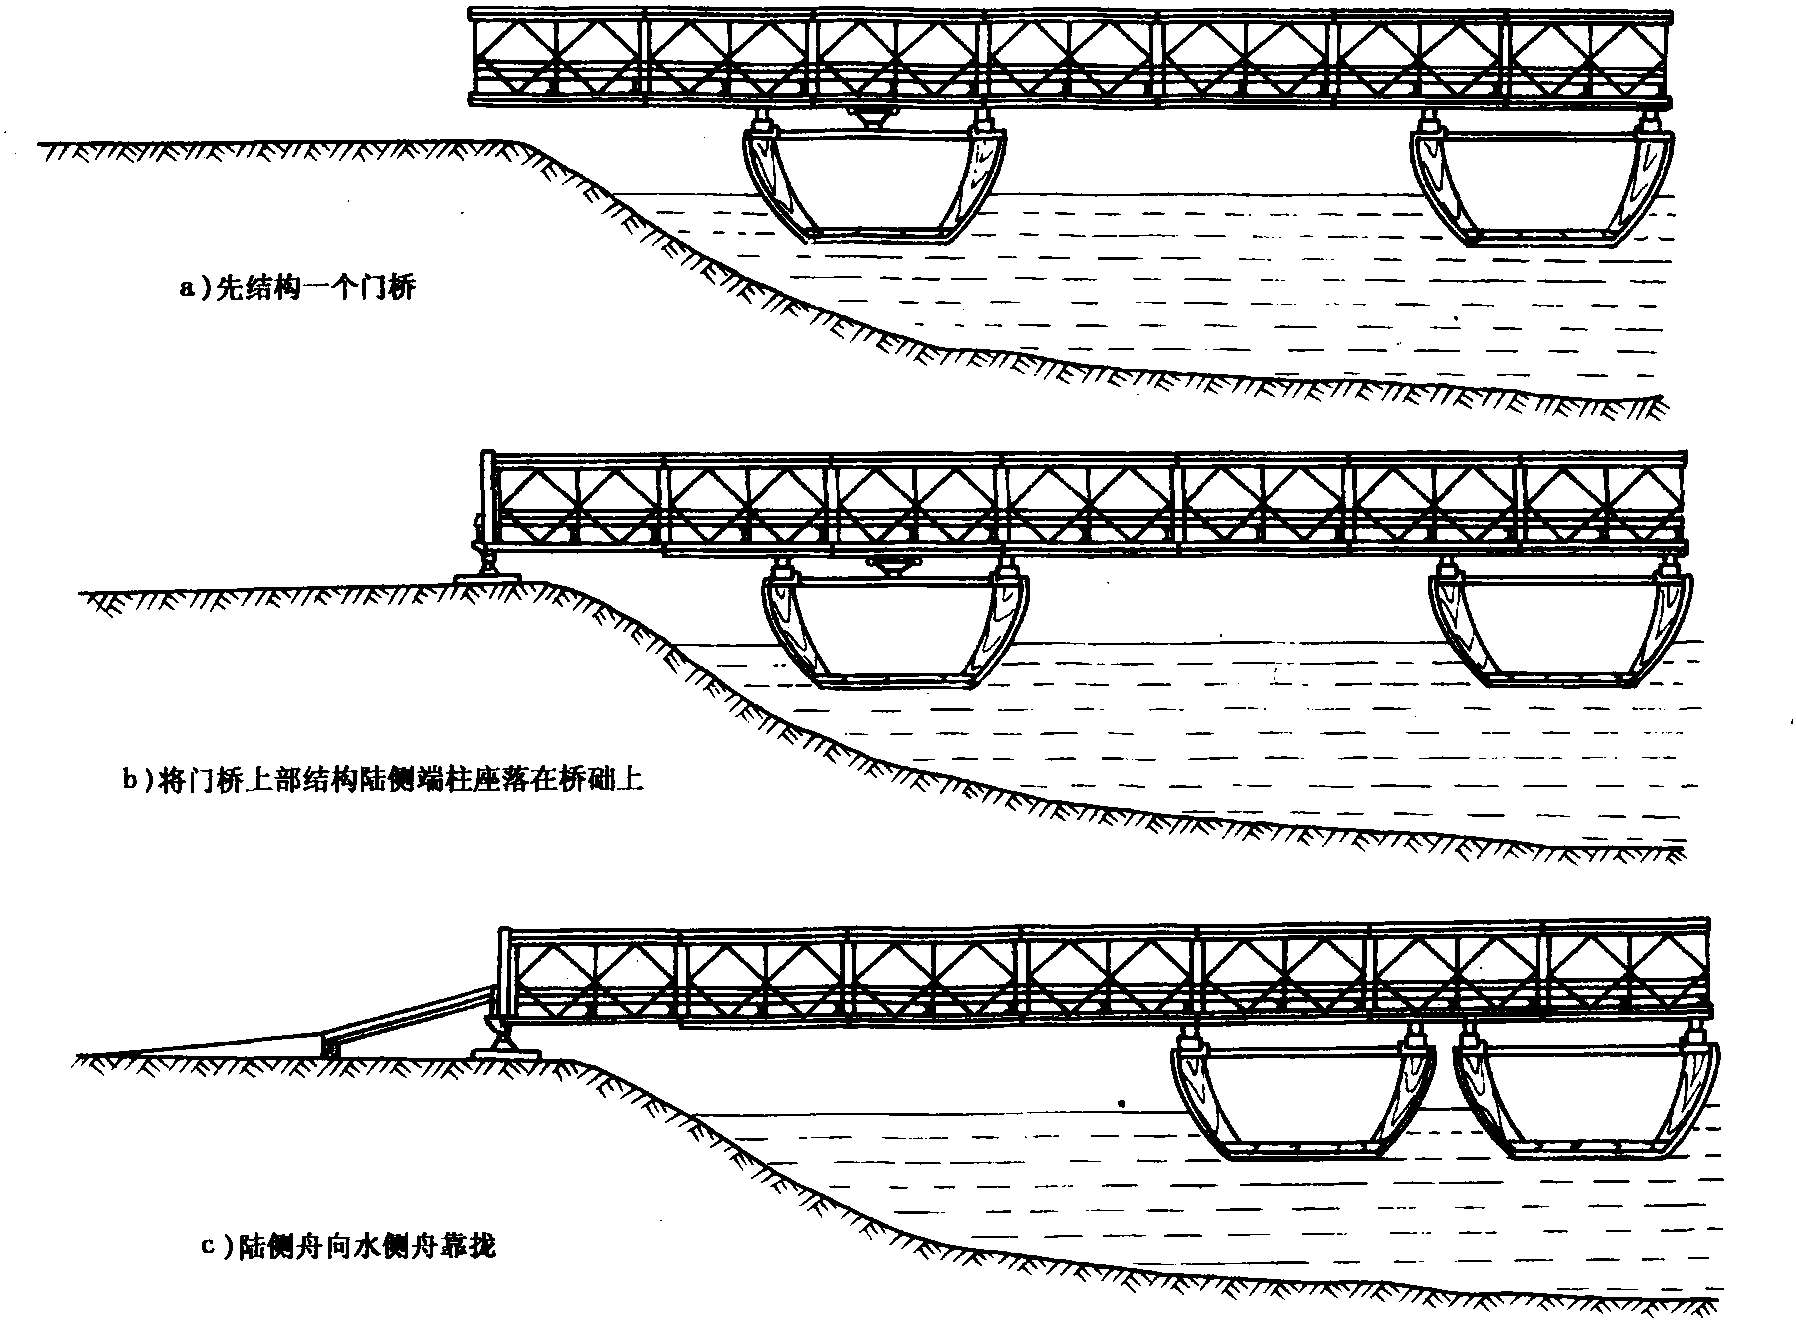 第五节 浮游栈桥的结构与作业